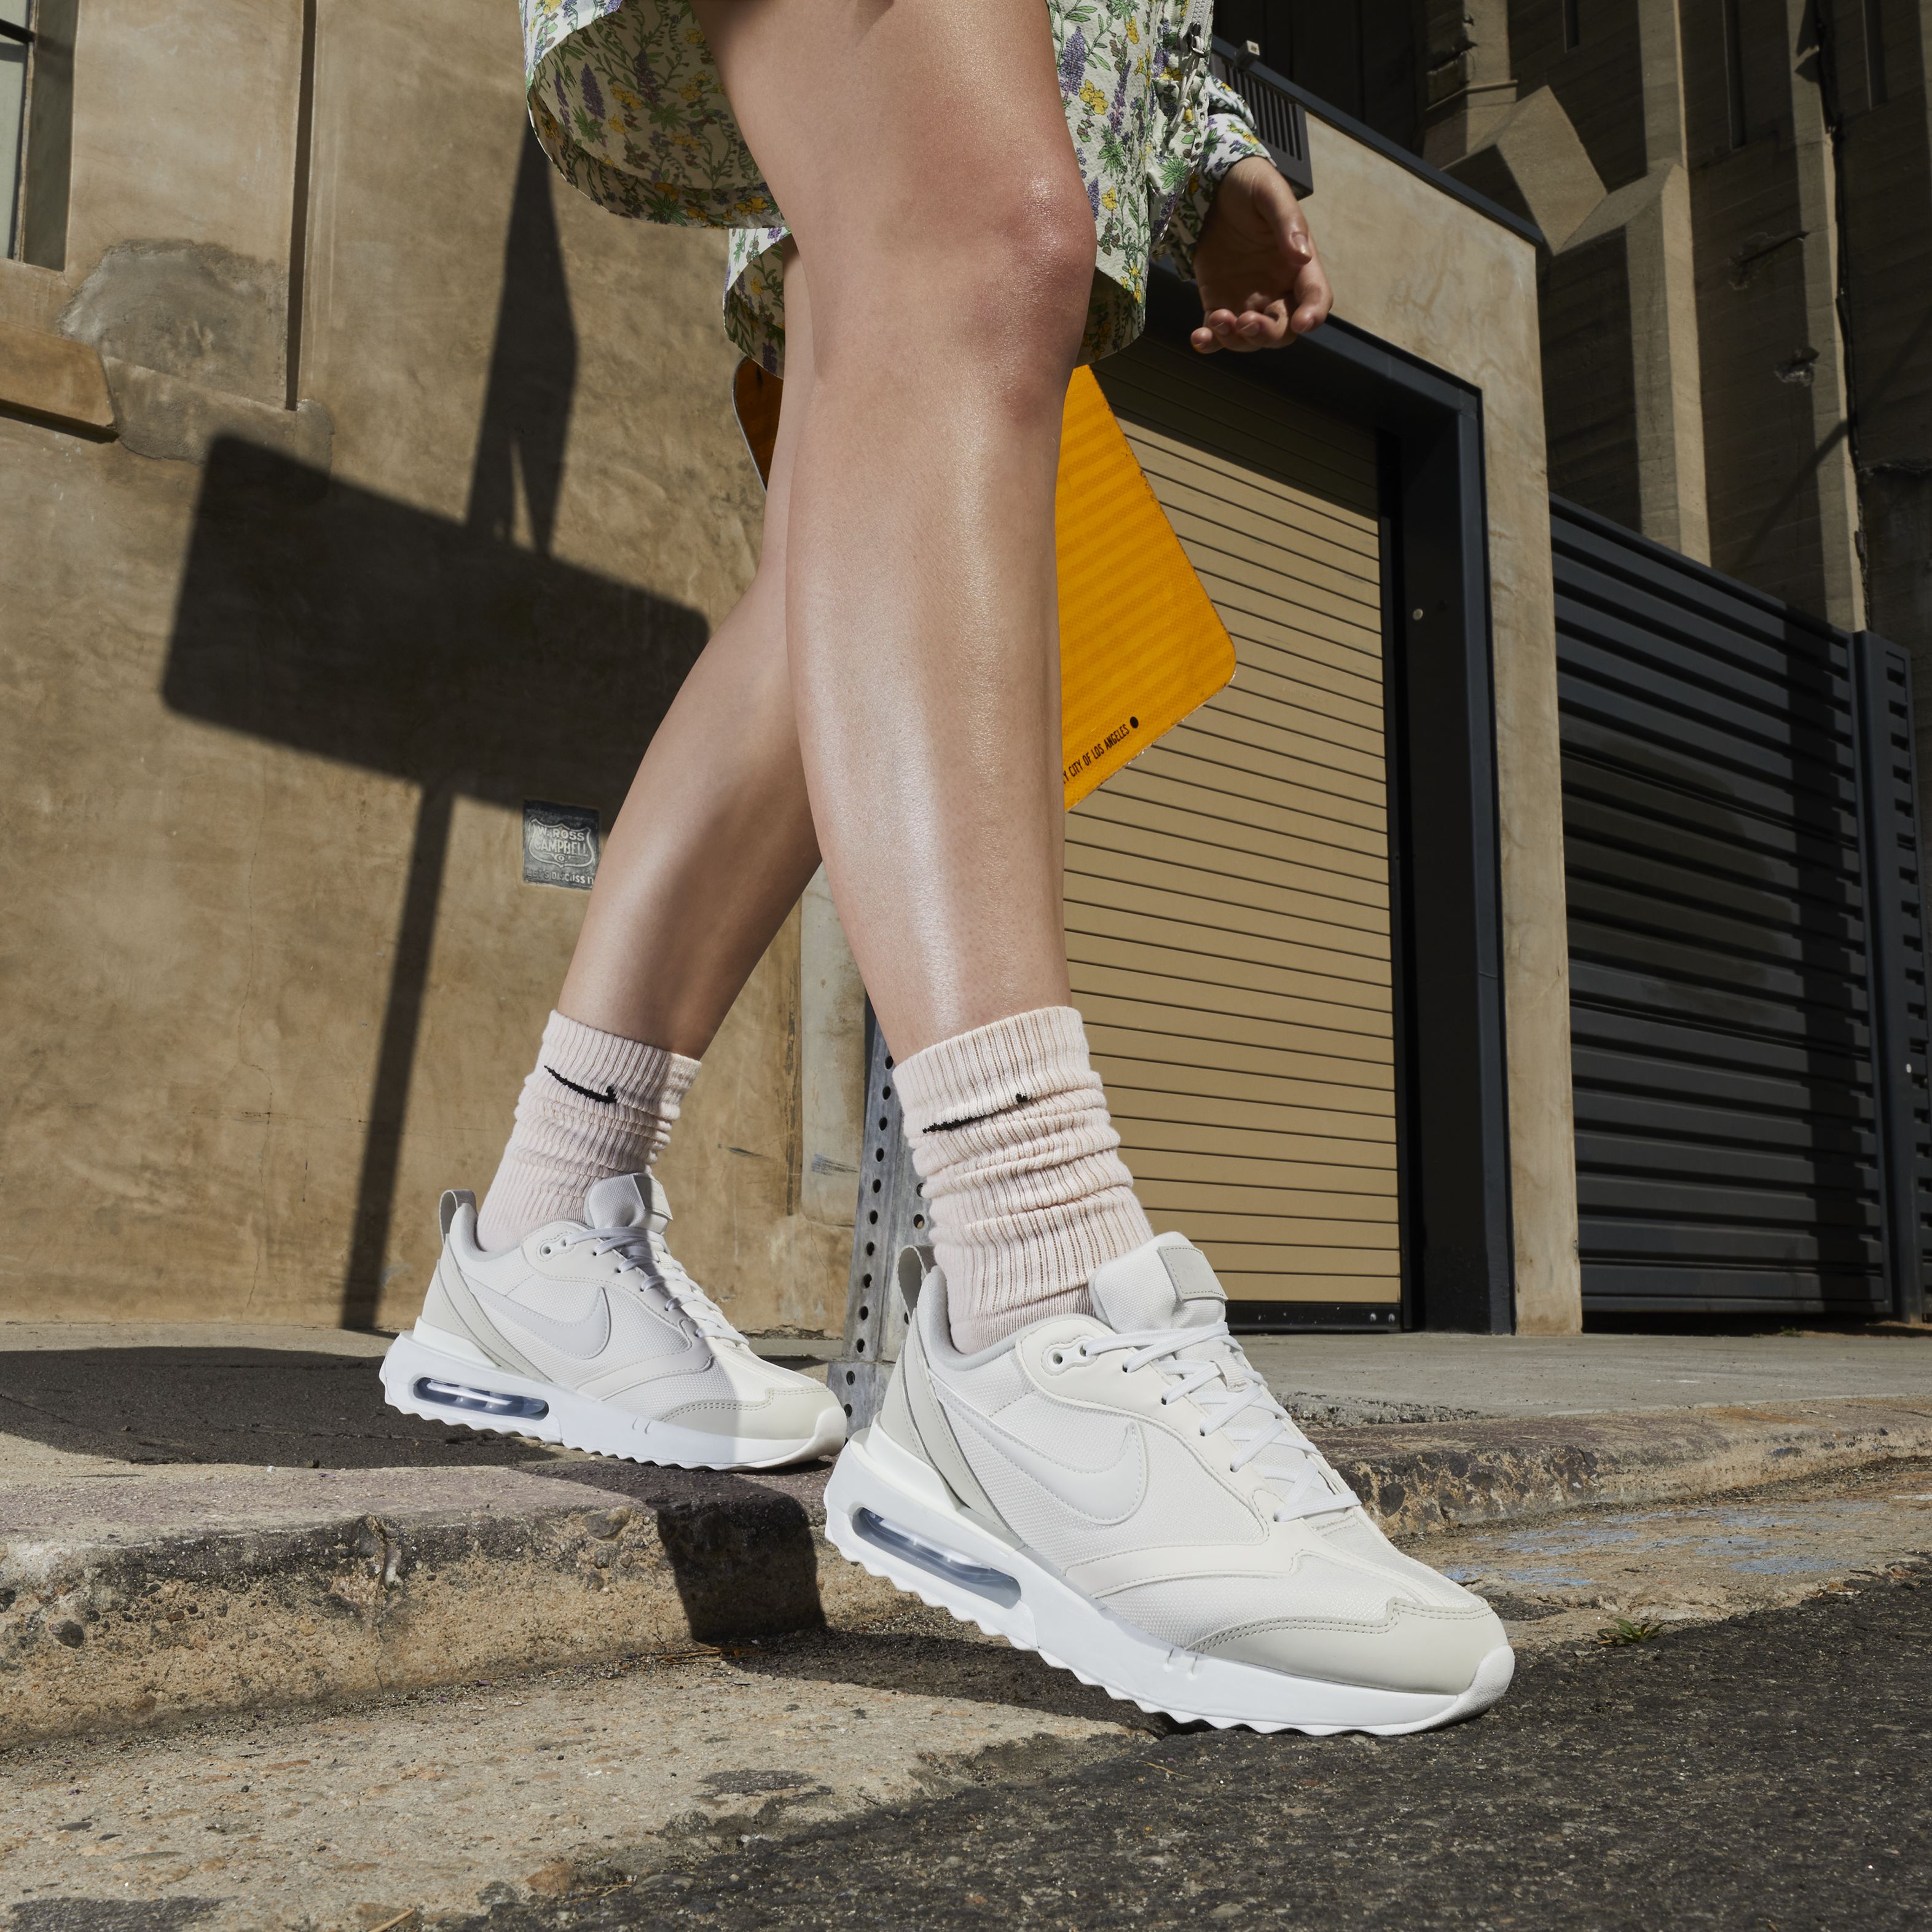 Zapatillas Nike Air Max - calzado - Sportswear - Argentina | Tienda oficial